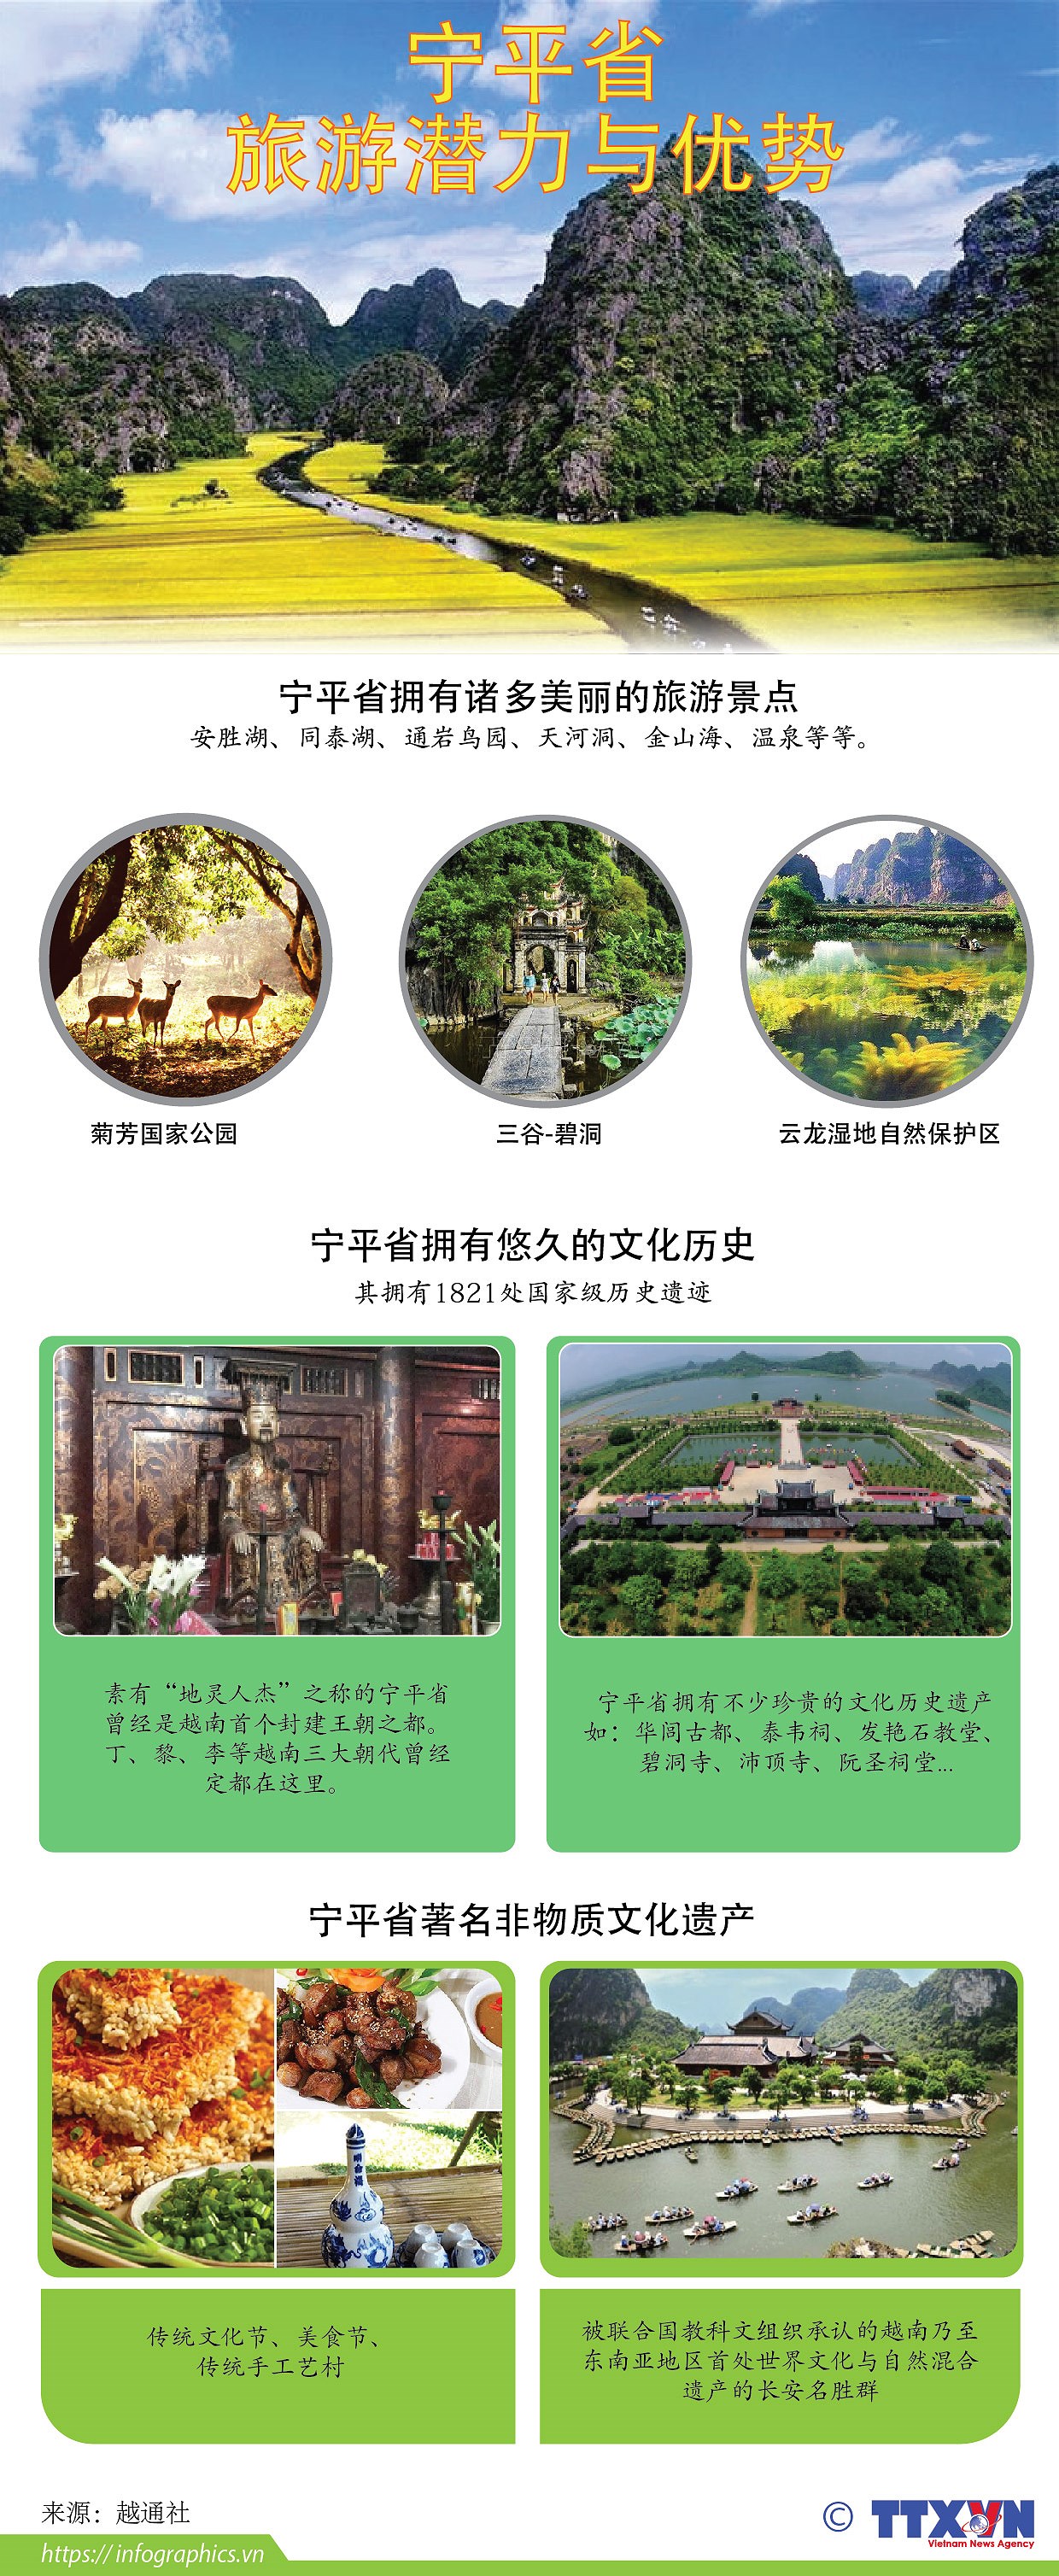 图表新闻：宁平省——越南美丽迷人的旅游景点 hinh anh 1